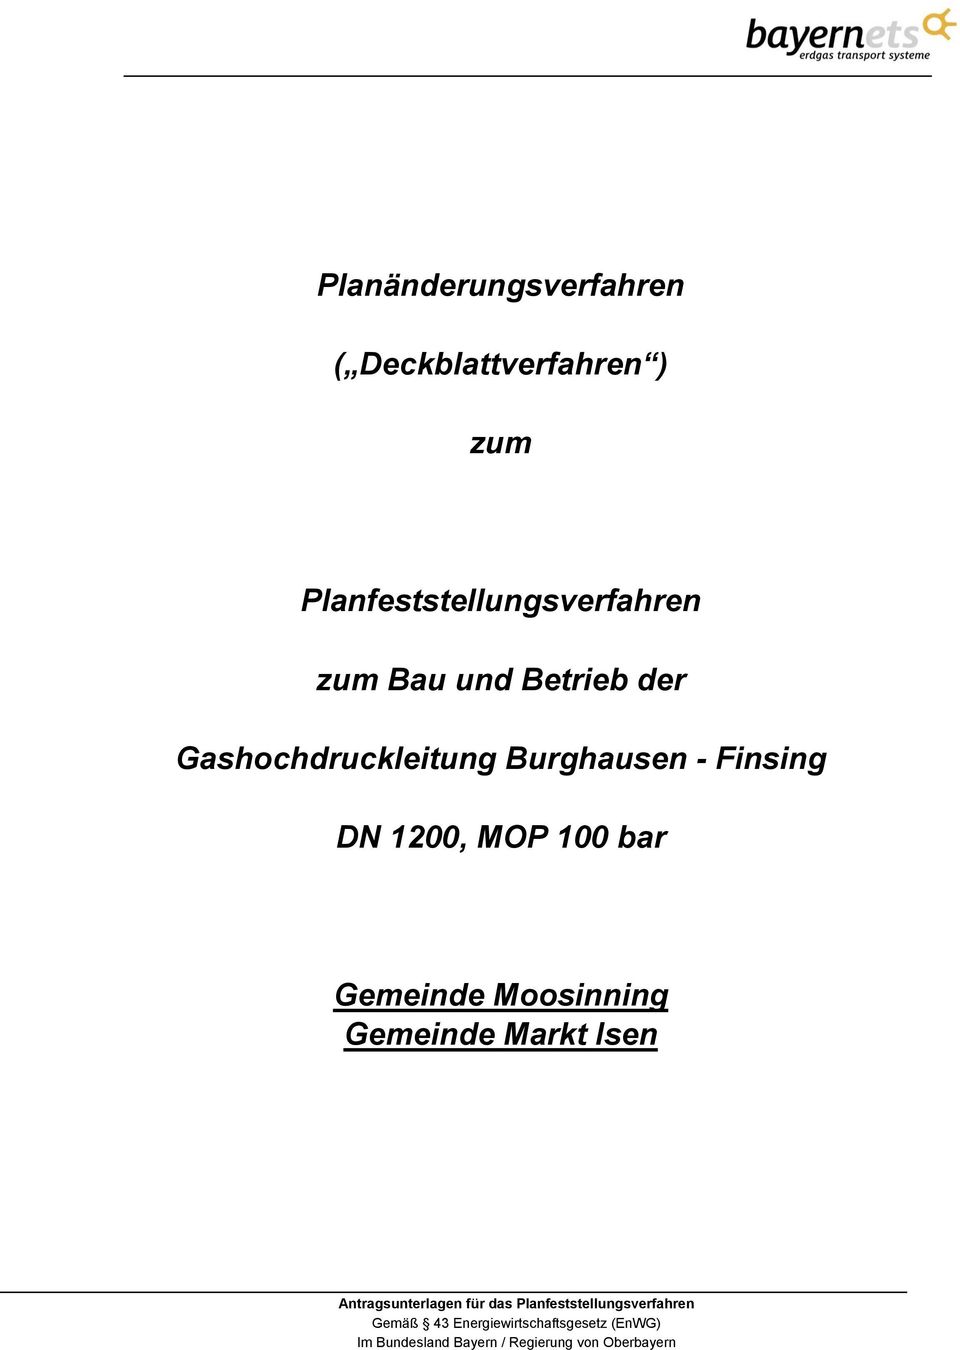 Gashochdruckleitung Burghausen - Finsing DN 1200,